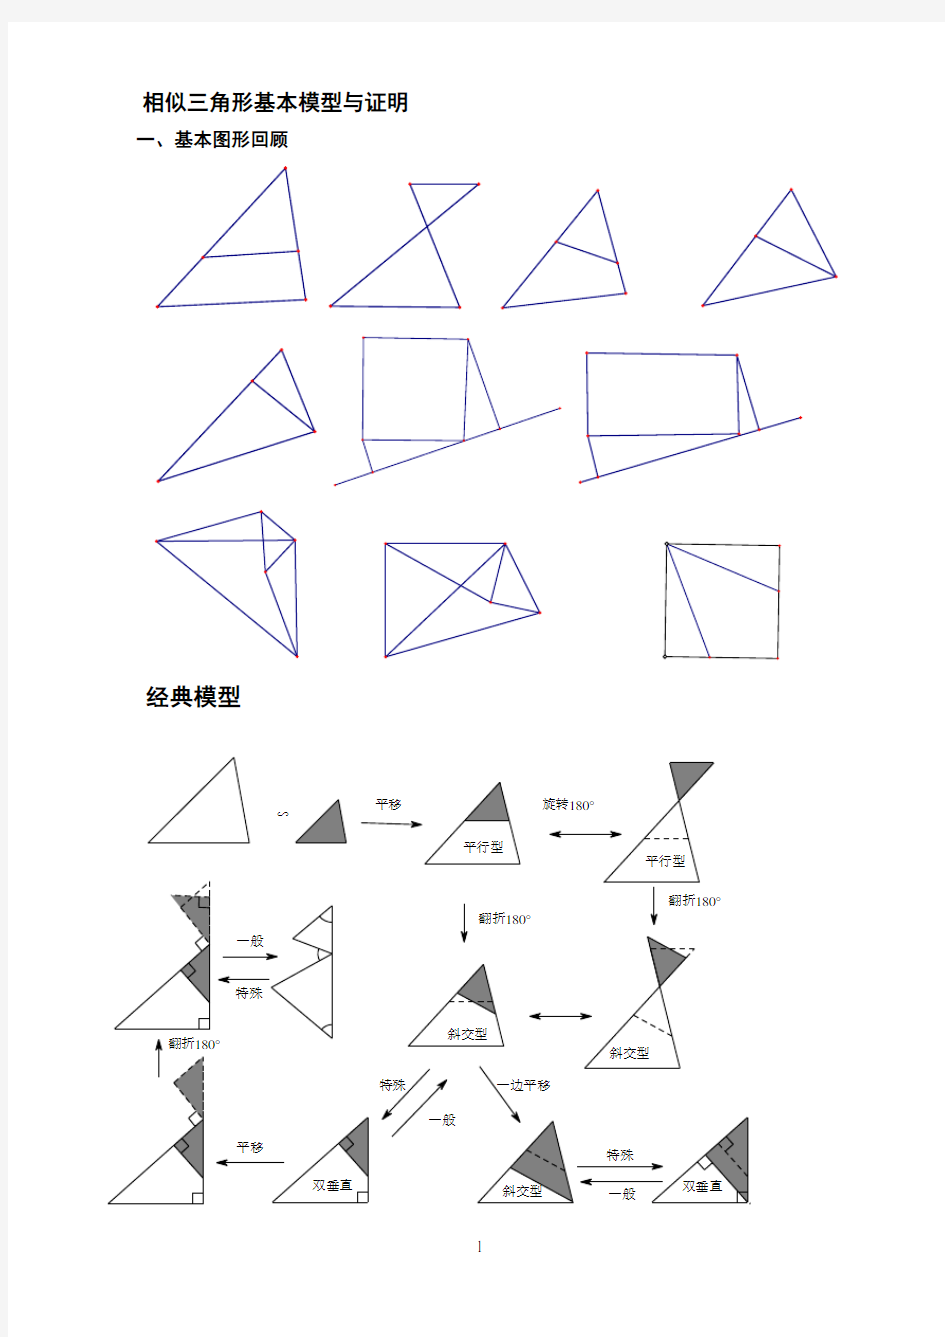 相似三角形基本模型与证明